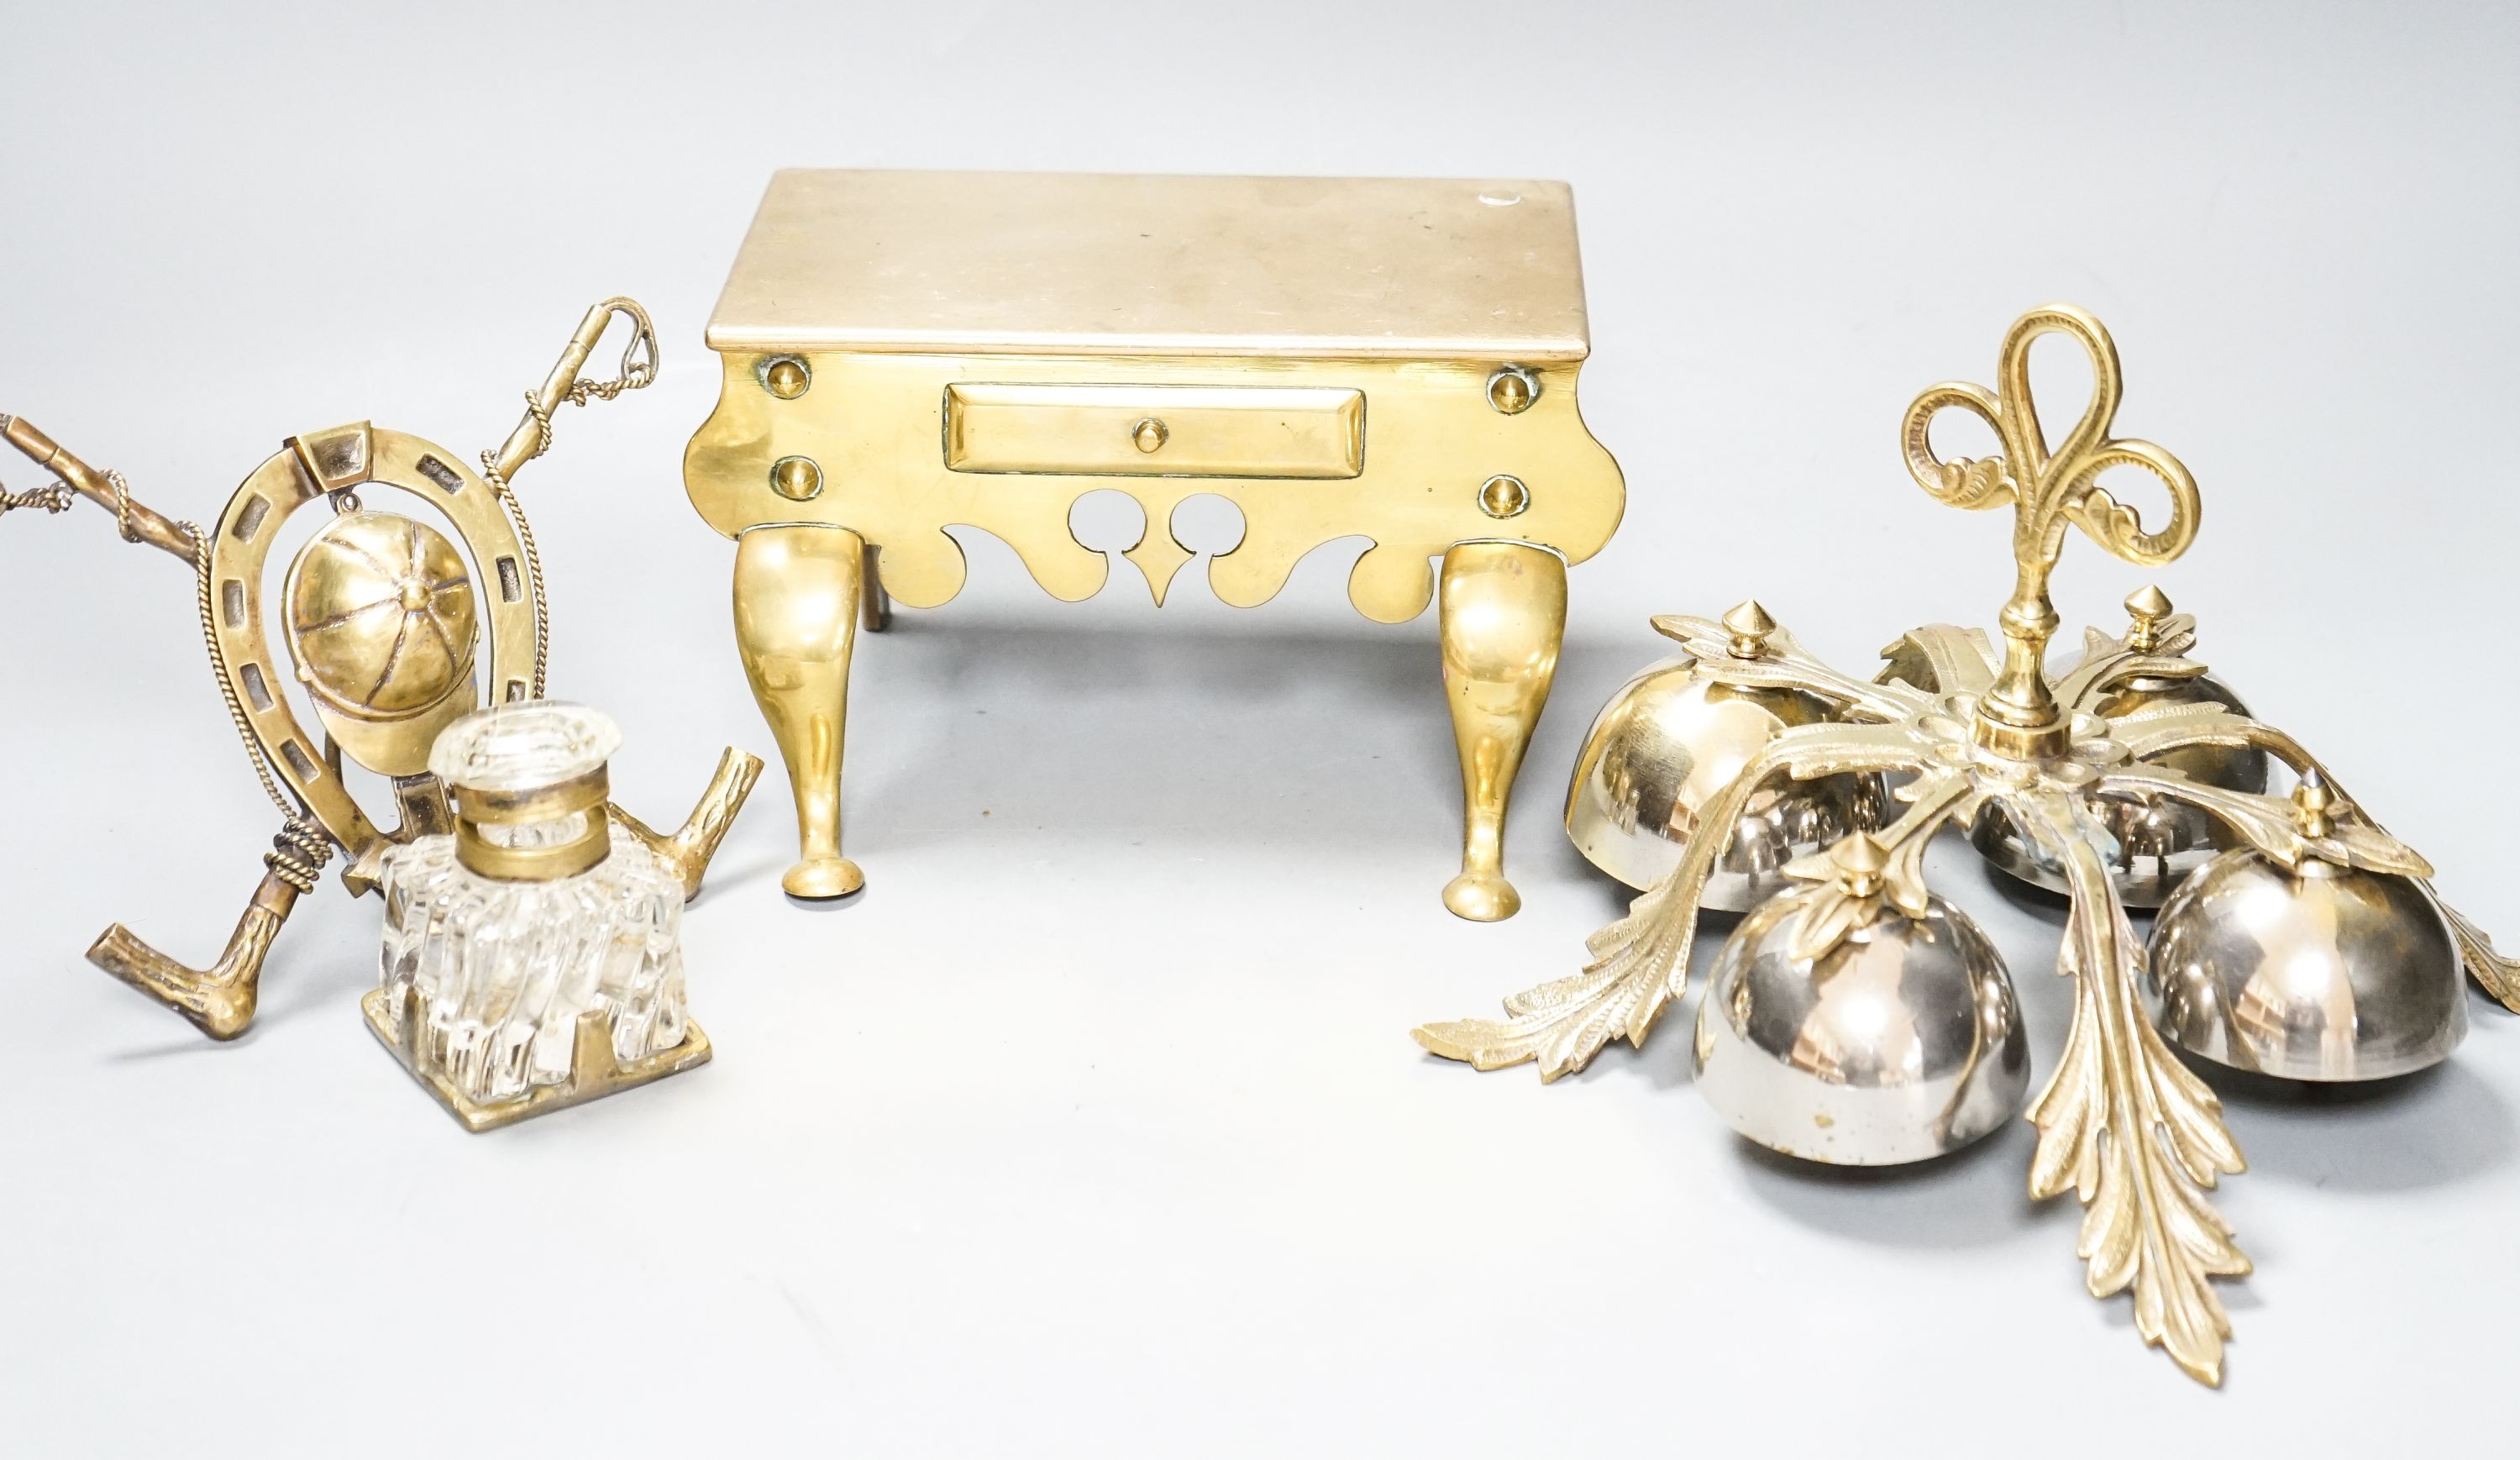 A brass Jockey-related inkwell, a miniature brass footman and brass hand bells